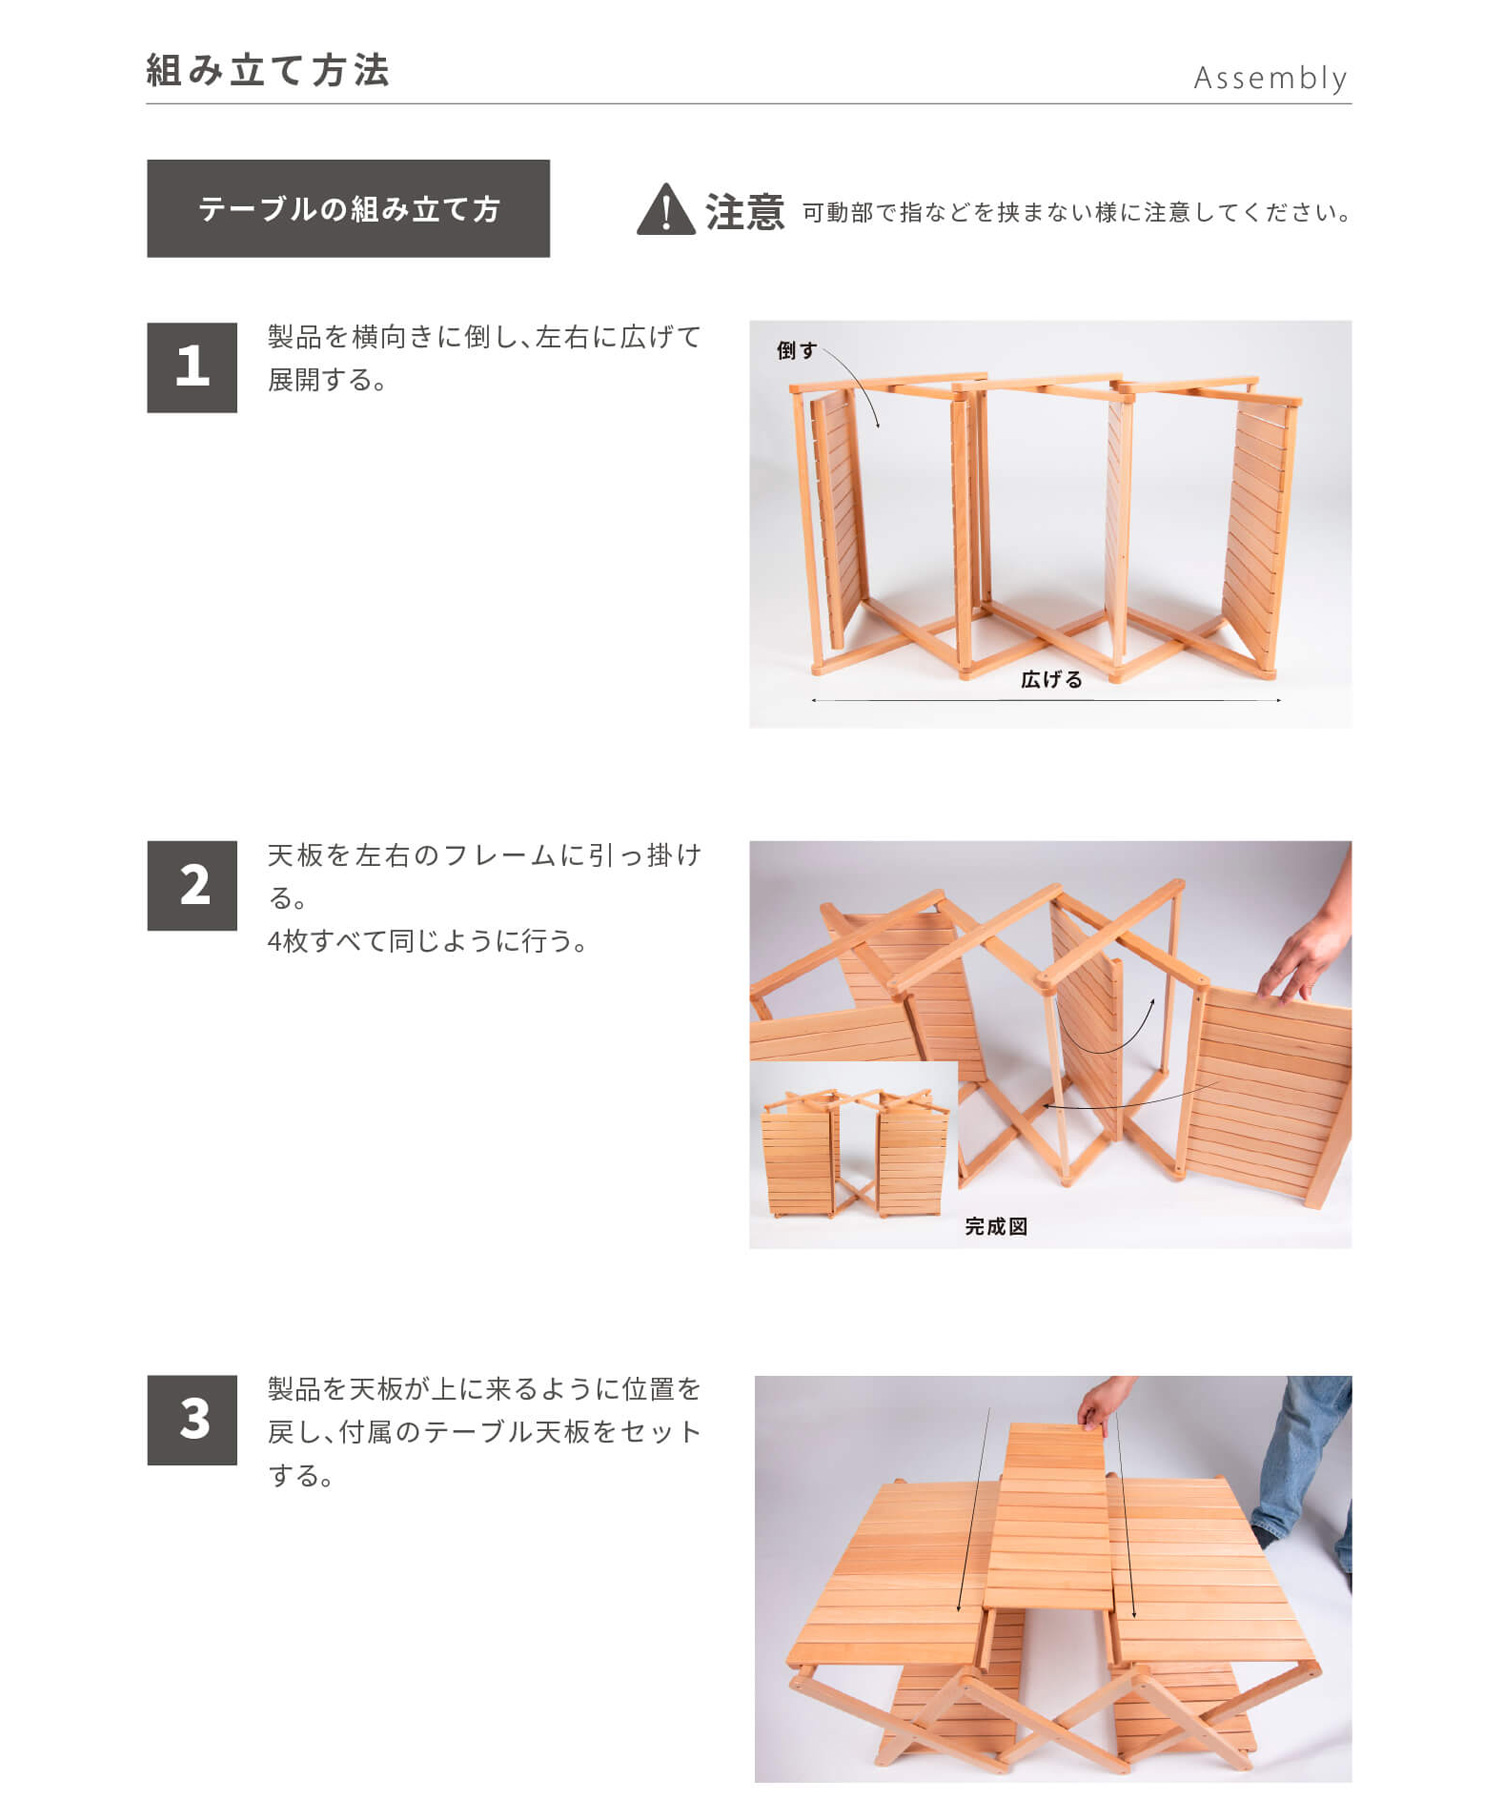 スモア チェア Woodi Folding Rack（2Way）